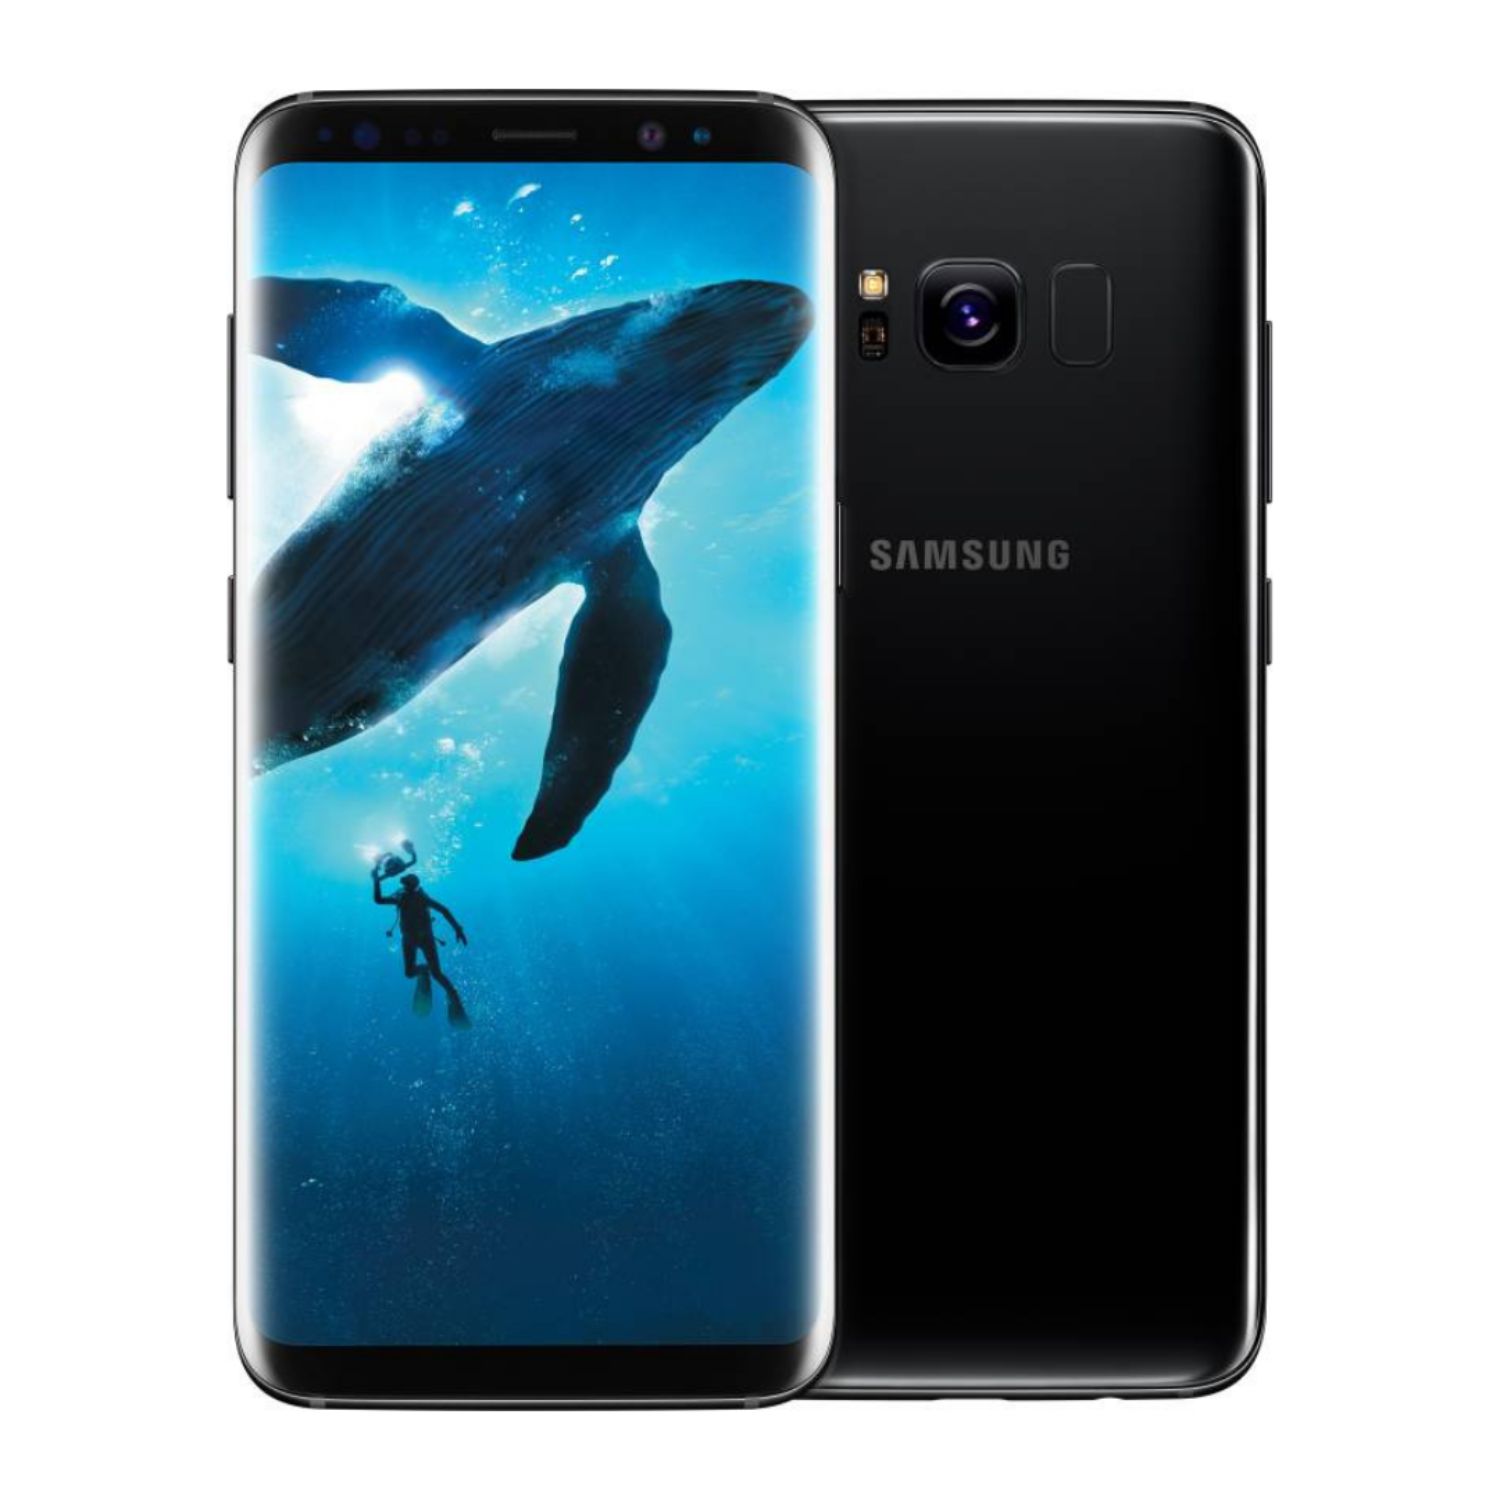 Samsung s8 128gb. Samsung Galaxy s8 Plus. Samsung Galaxy s8 Plus 64gb. Samsung Galaxy s8 64gb. Samsung Galaxy s8 64gb Midnight Black.